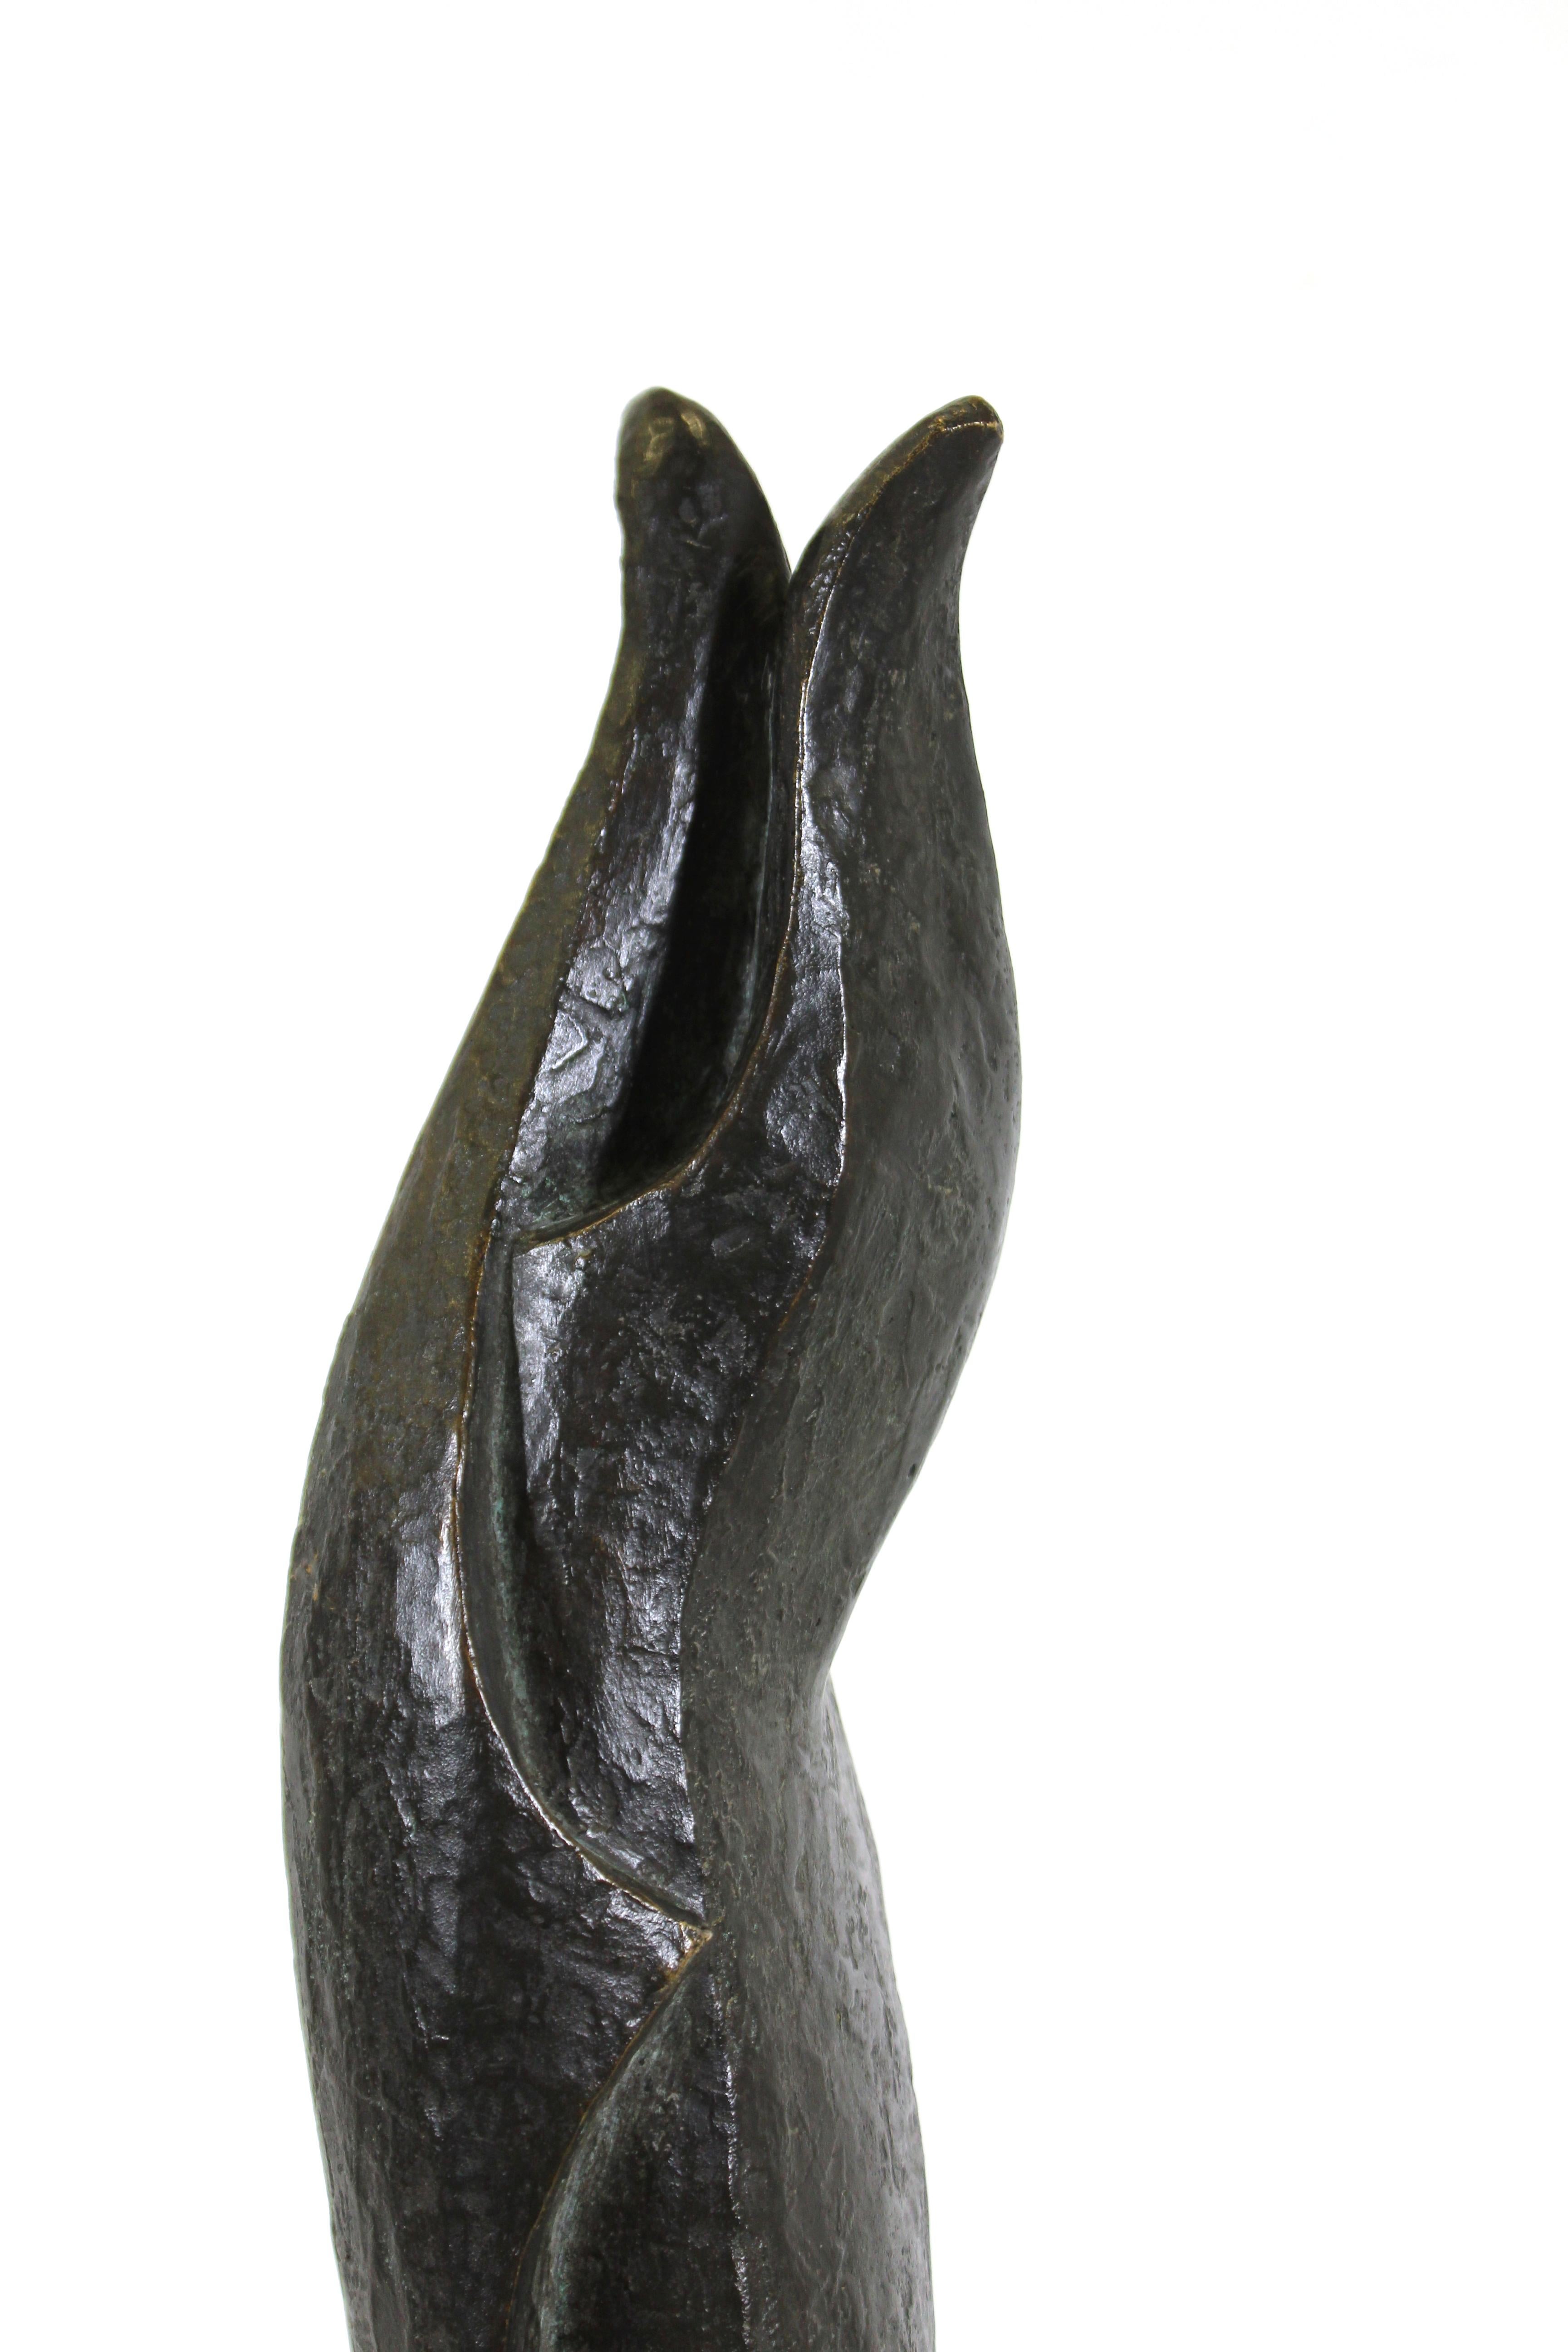 Portugiesische moderne abstrakte Bronzeskulptur eines sich umarmenden Paares, geschaffen vom portugiesischen Bildhauer und Künstler Vasco Pereira da Conceição im Jahr 1965.
Vasco Pereira da Conceição (1914-1992) studierte Bildhauerei an der